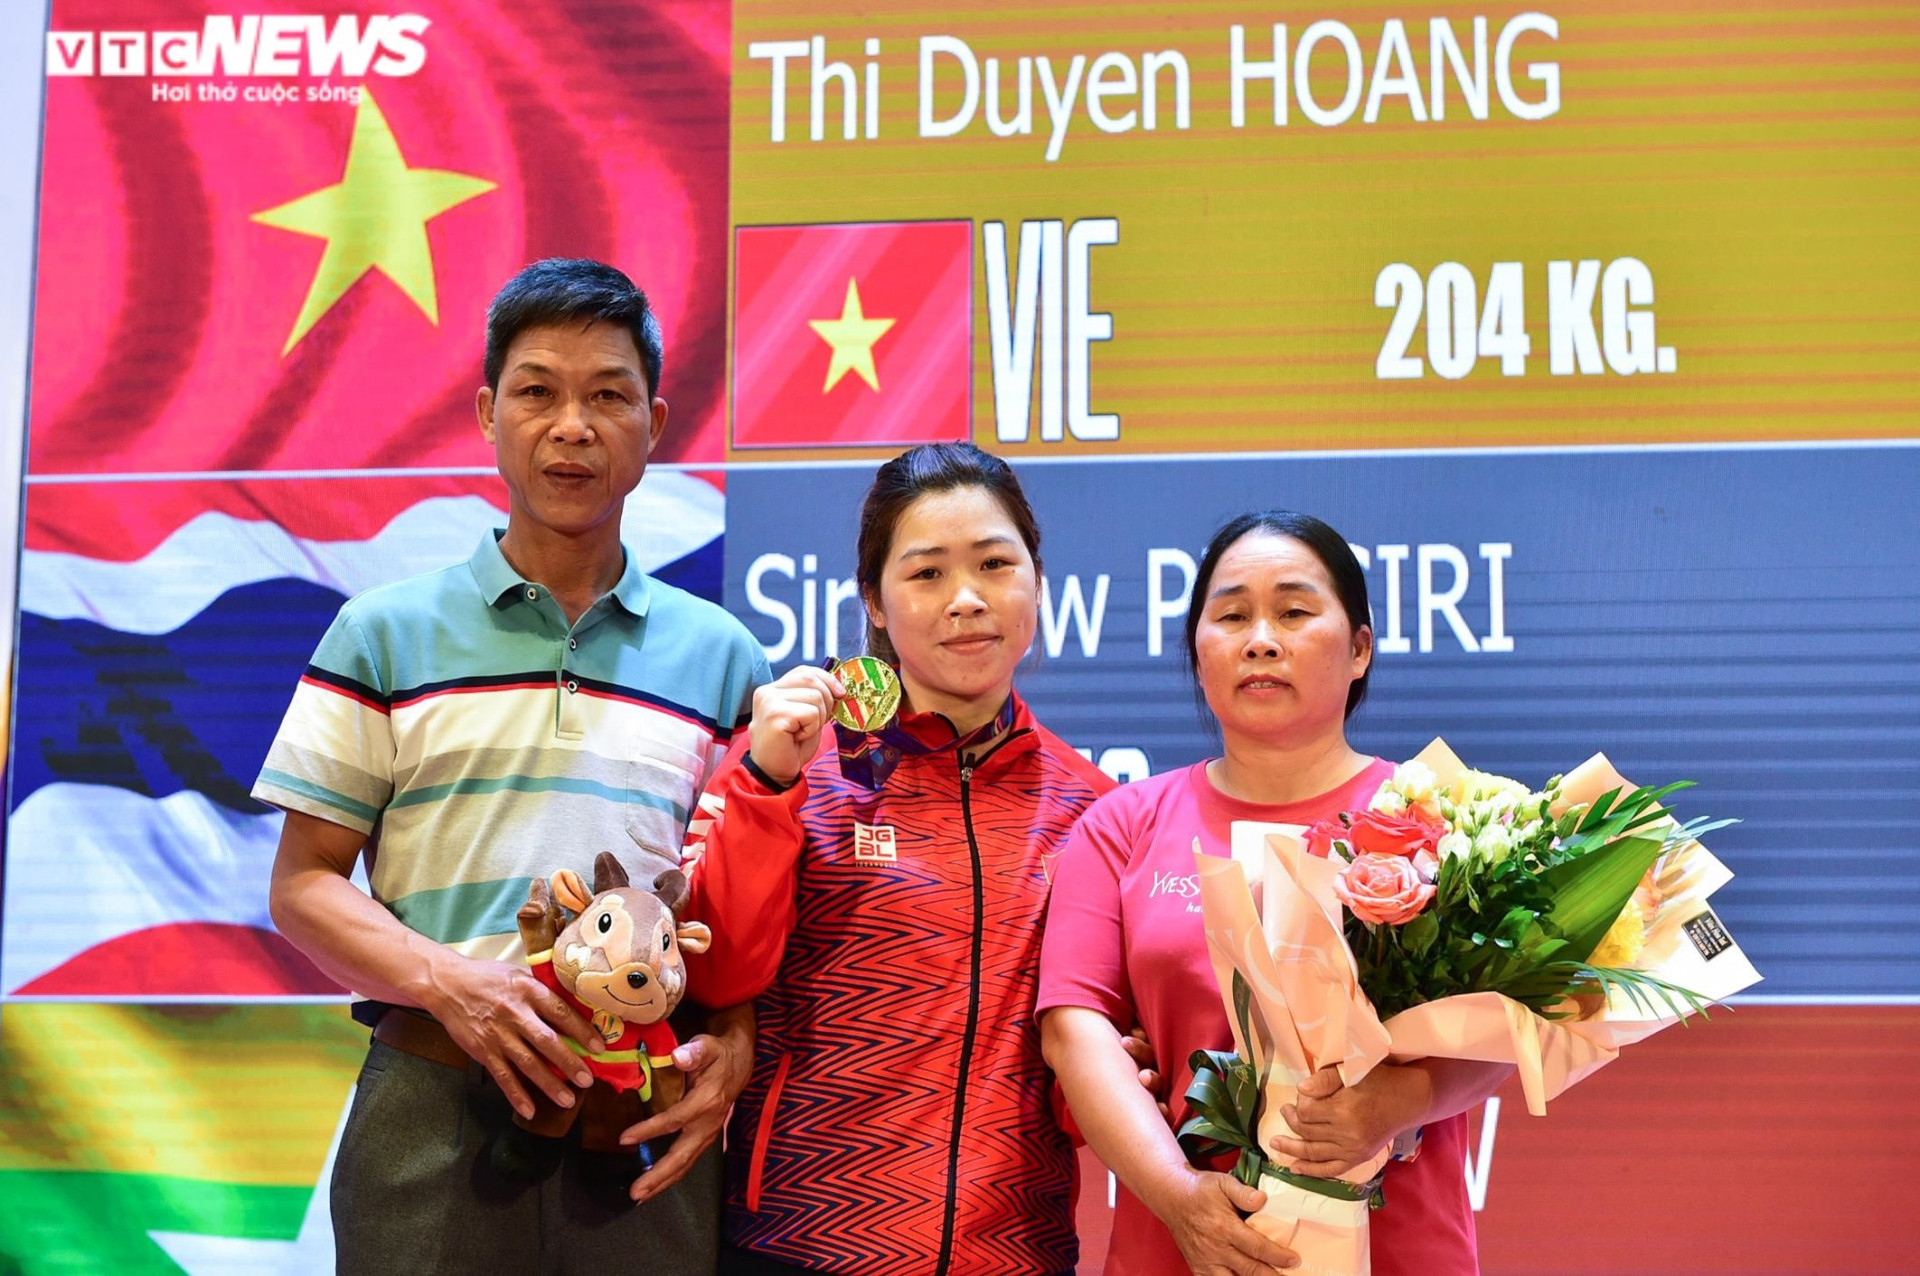 Đô cử Hoàng Thị Duyên vô đối nội dung 59kg, phá kỷ lục SEA Games - 11